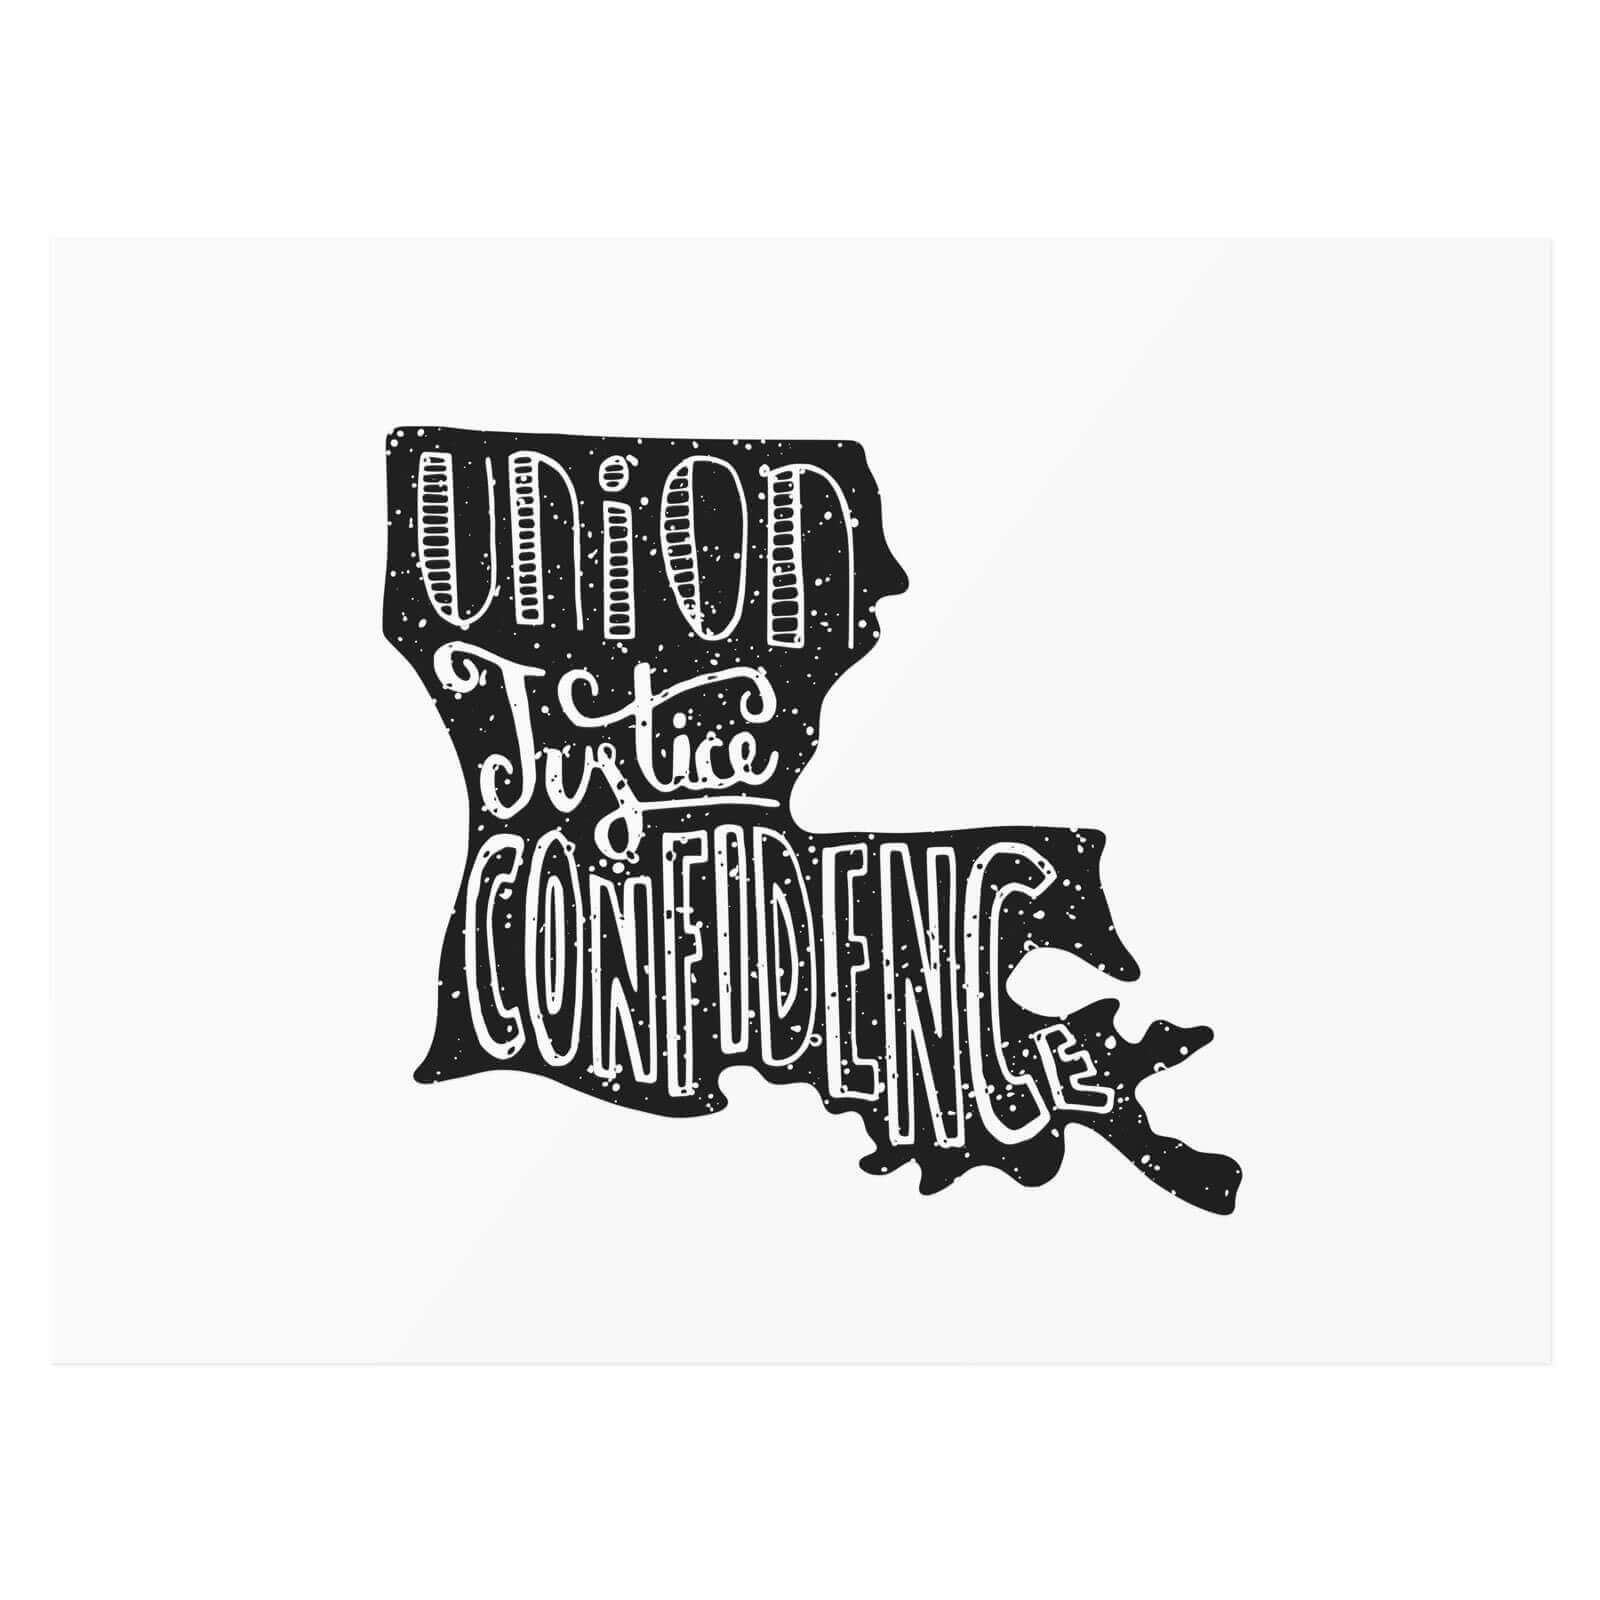 Louisiana — Union, justice, confidence